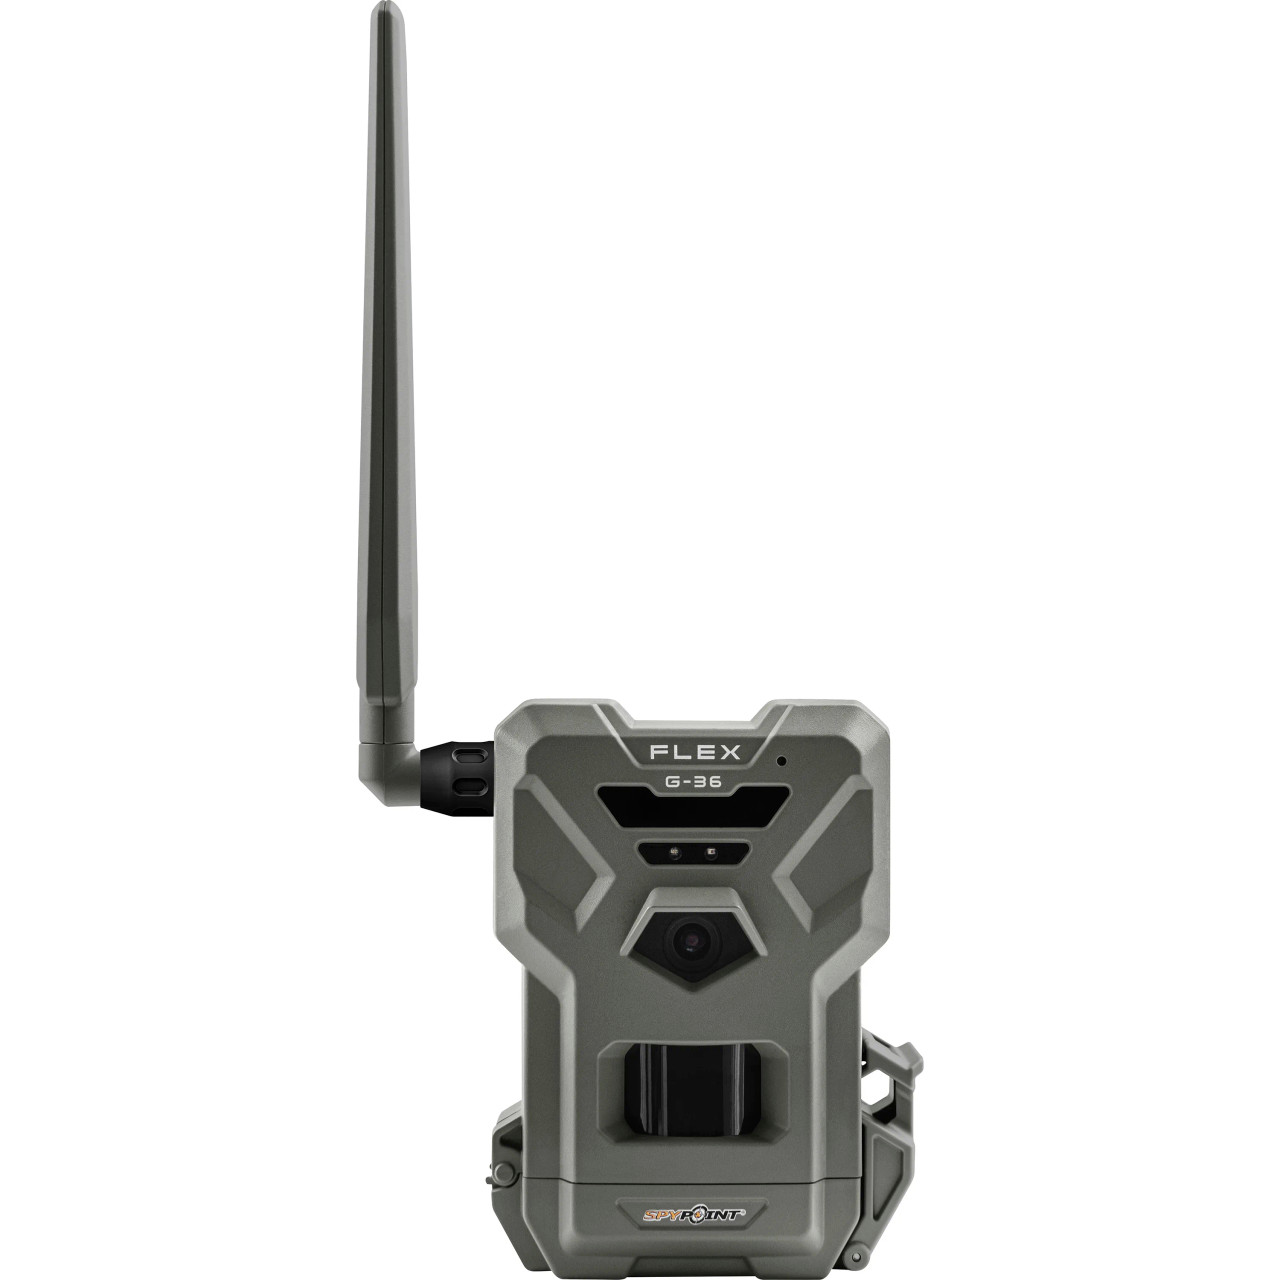 SpyPoint Flex-G36 Cellular Trail Cam